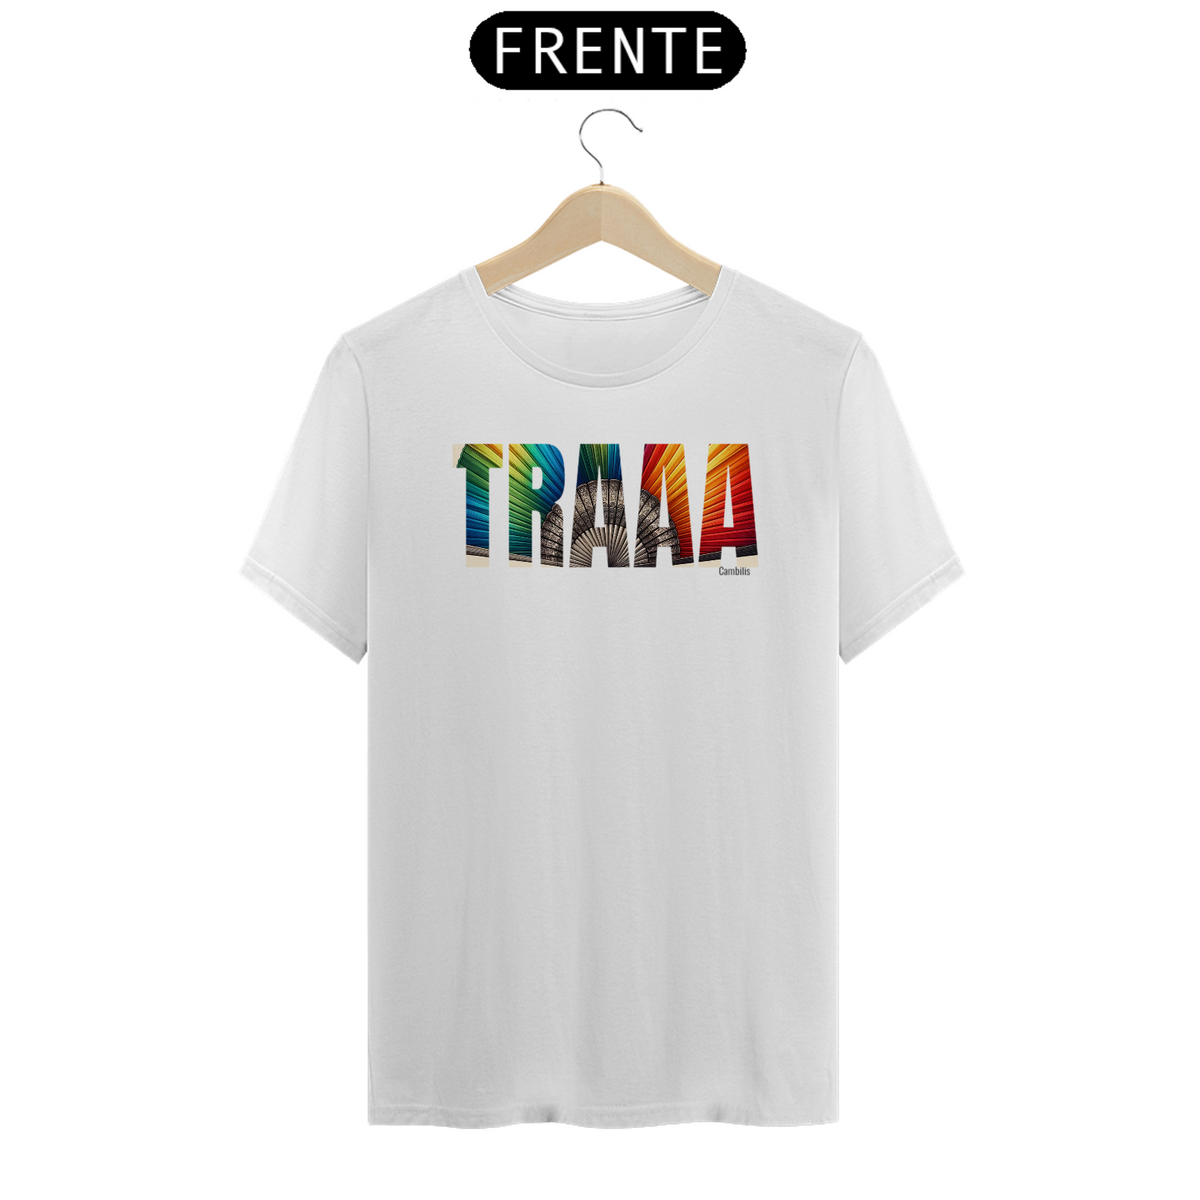 Nome do produto: Tshirt Leque Traaa